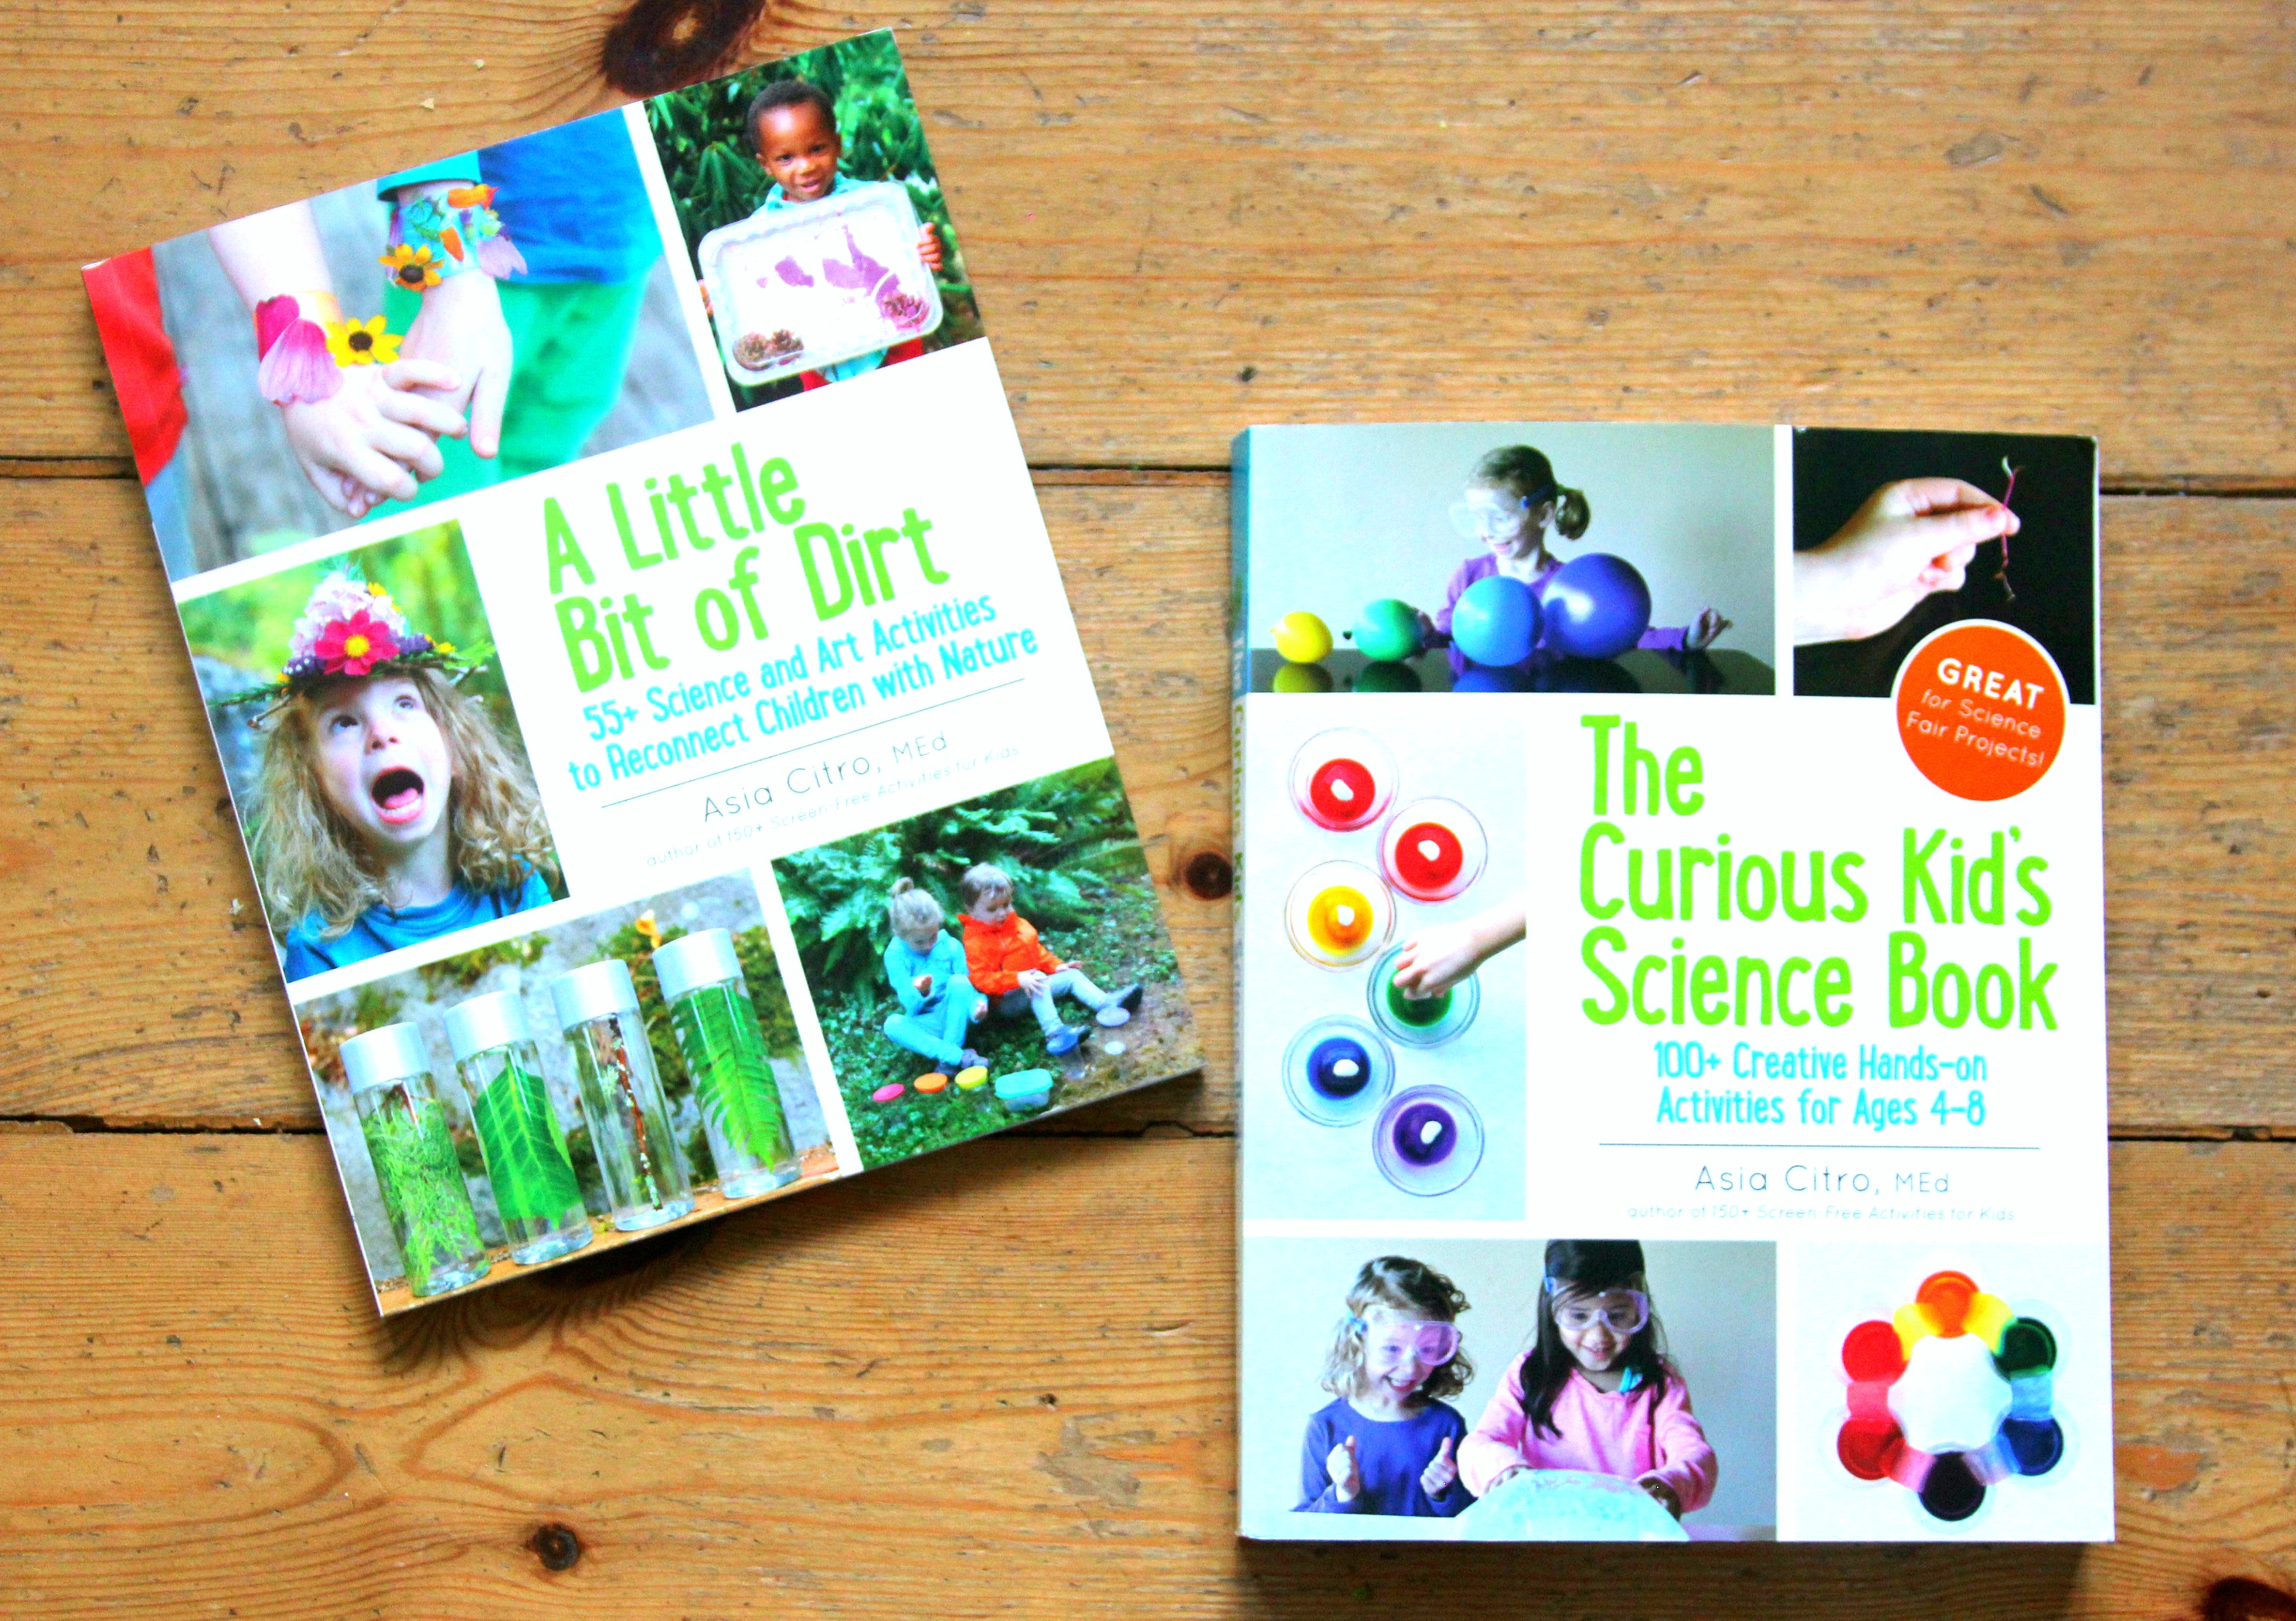 Brilantné vedecké knihy pre deti!